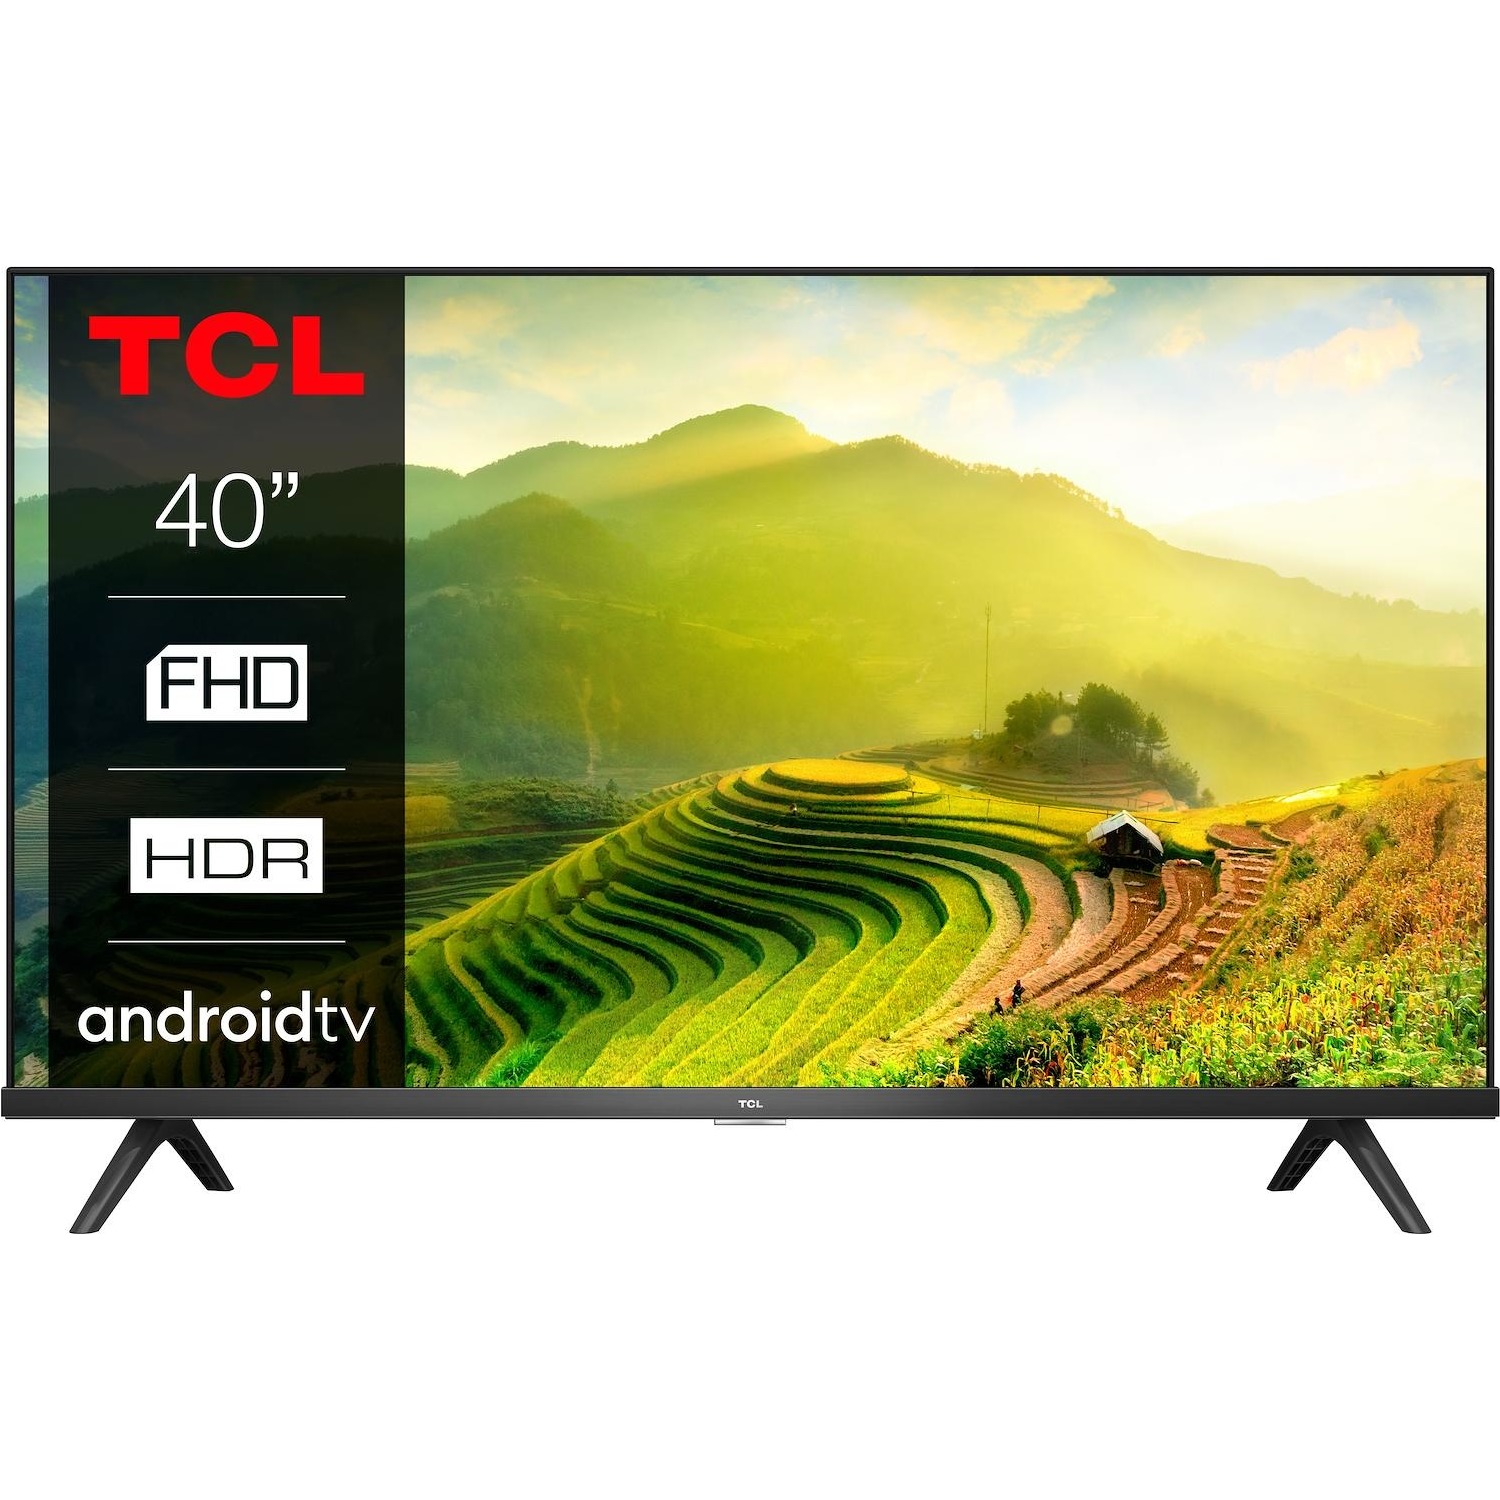 Immagine per TV LED Smart Android TCL 40S6200 da DIMOStore